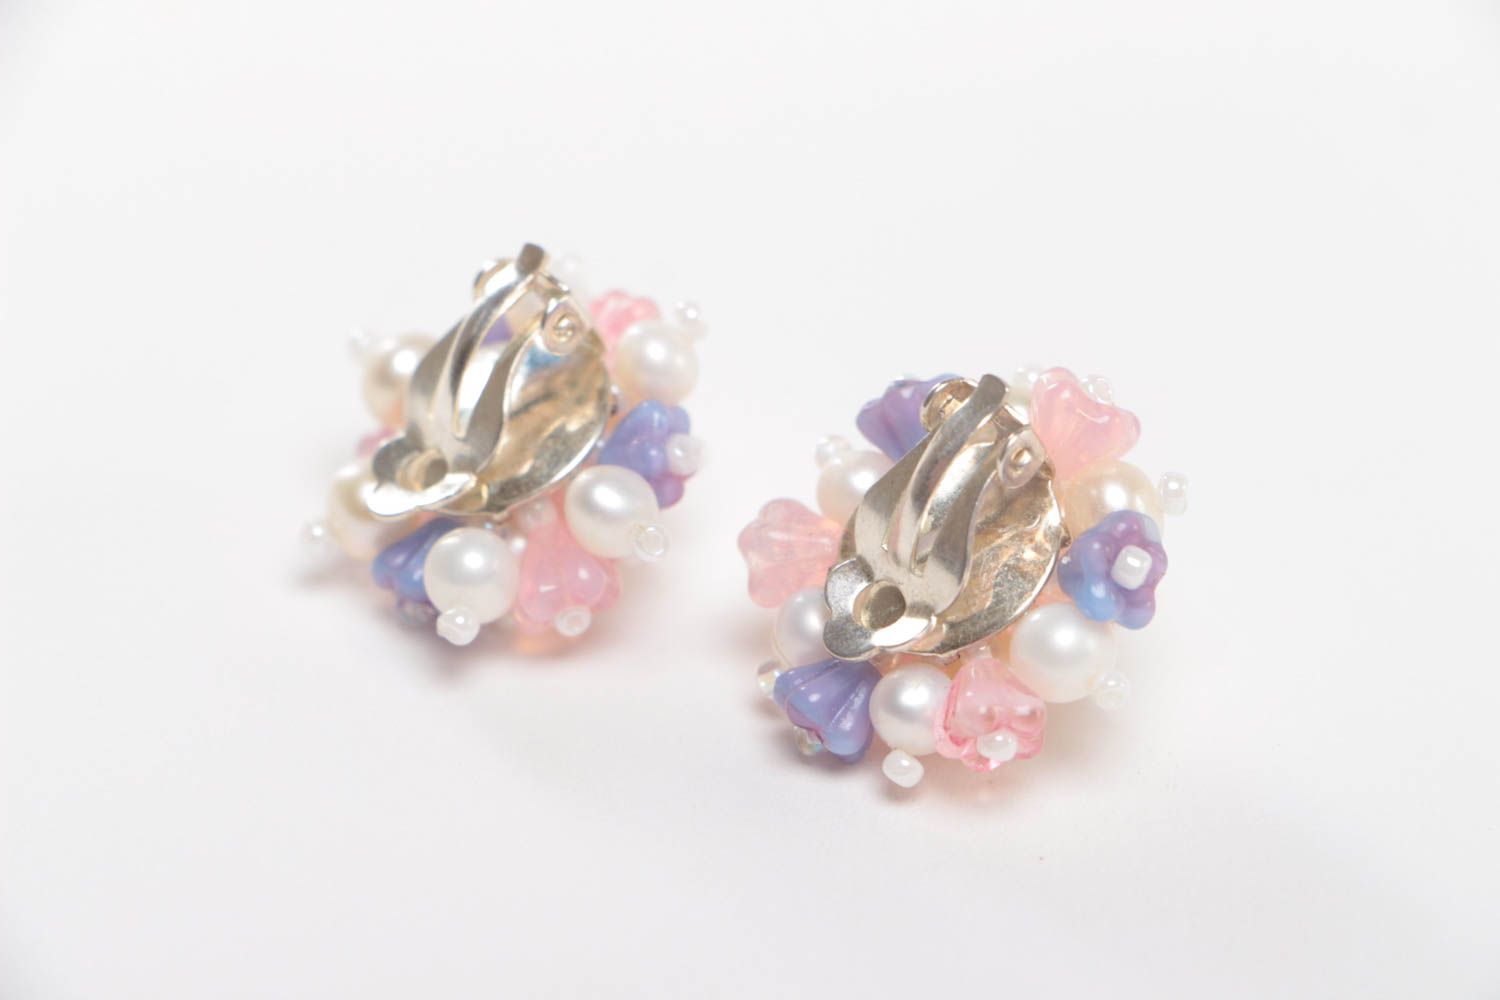 Handmade earrings designer earrings for girl unusual gift stone jewelry photo 4